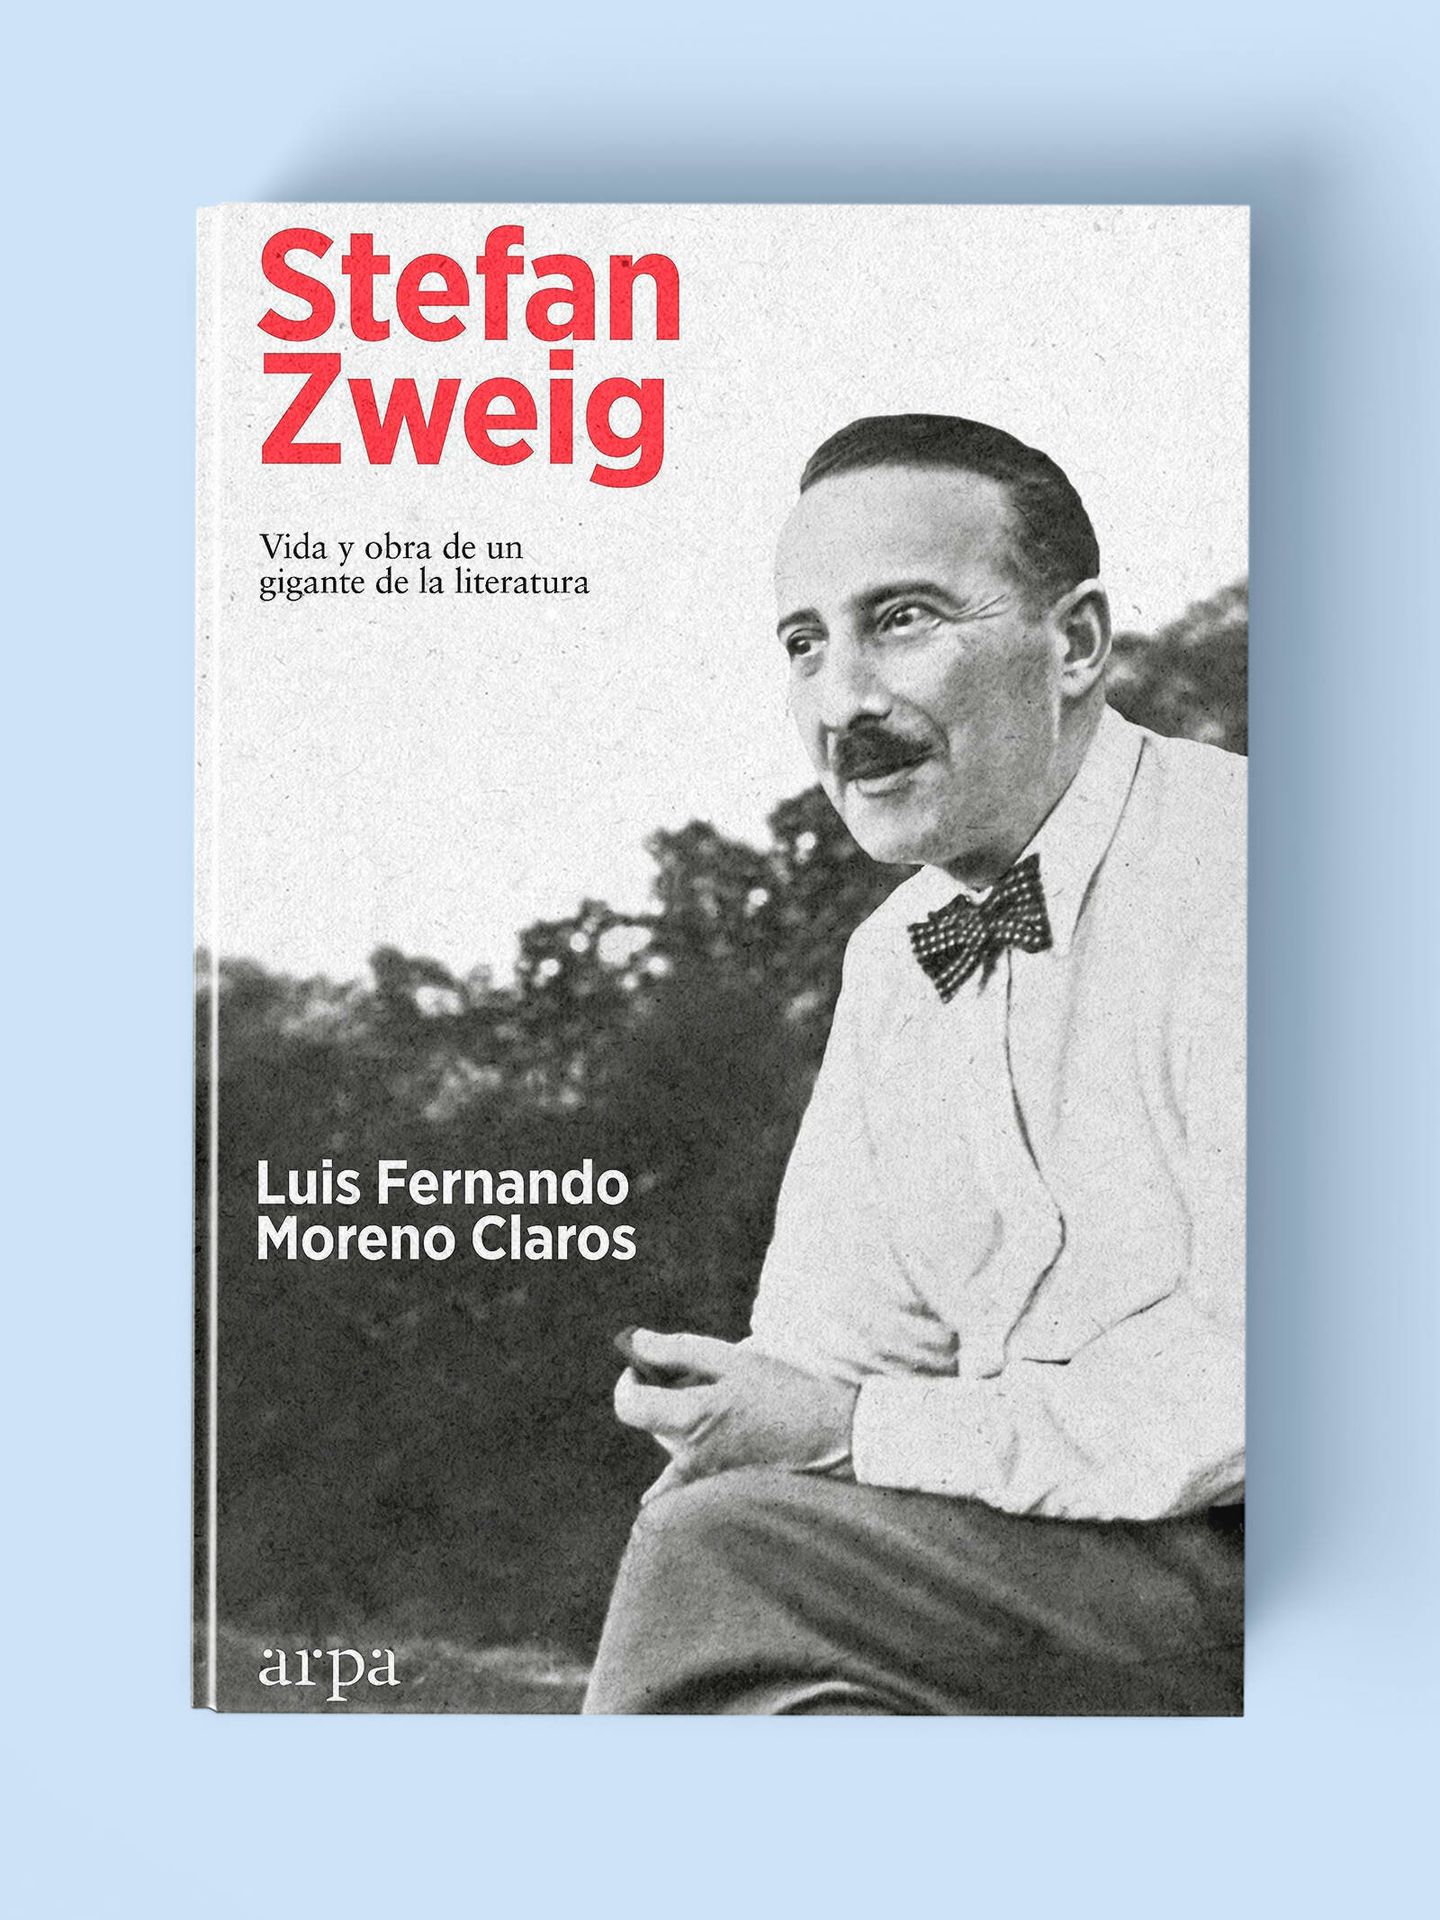 'Stefan Zweig'.